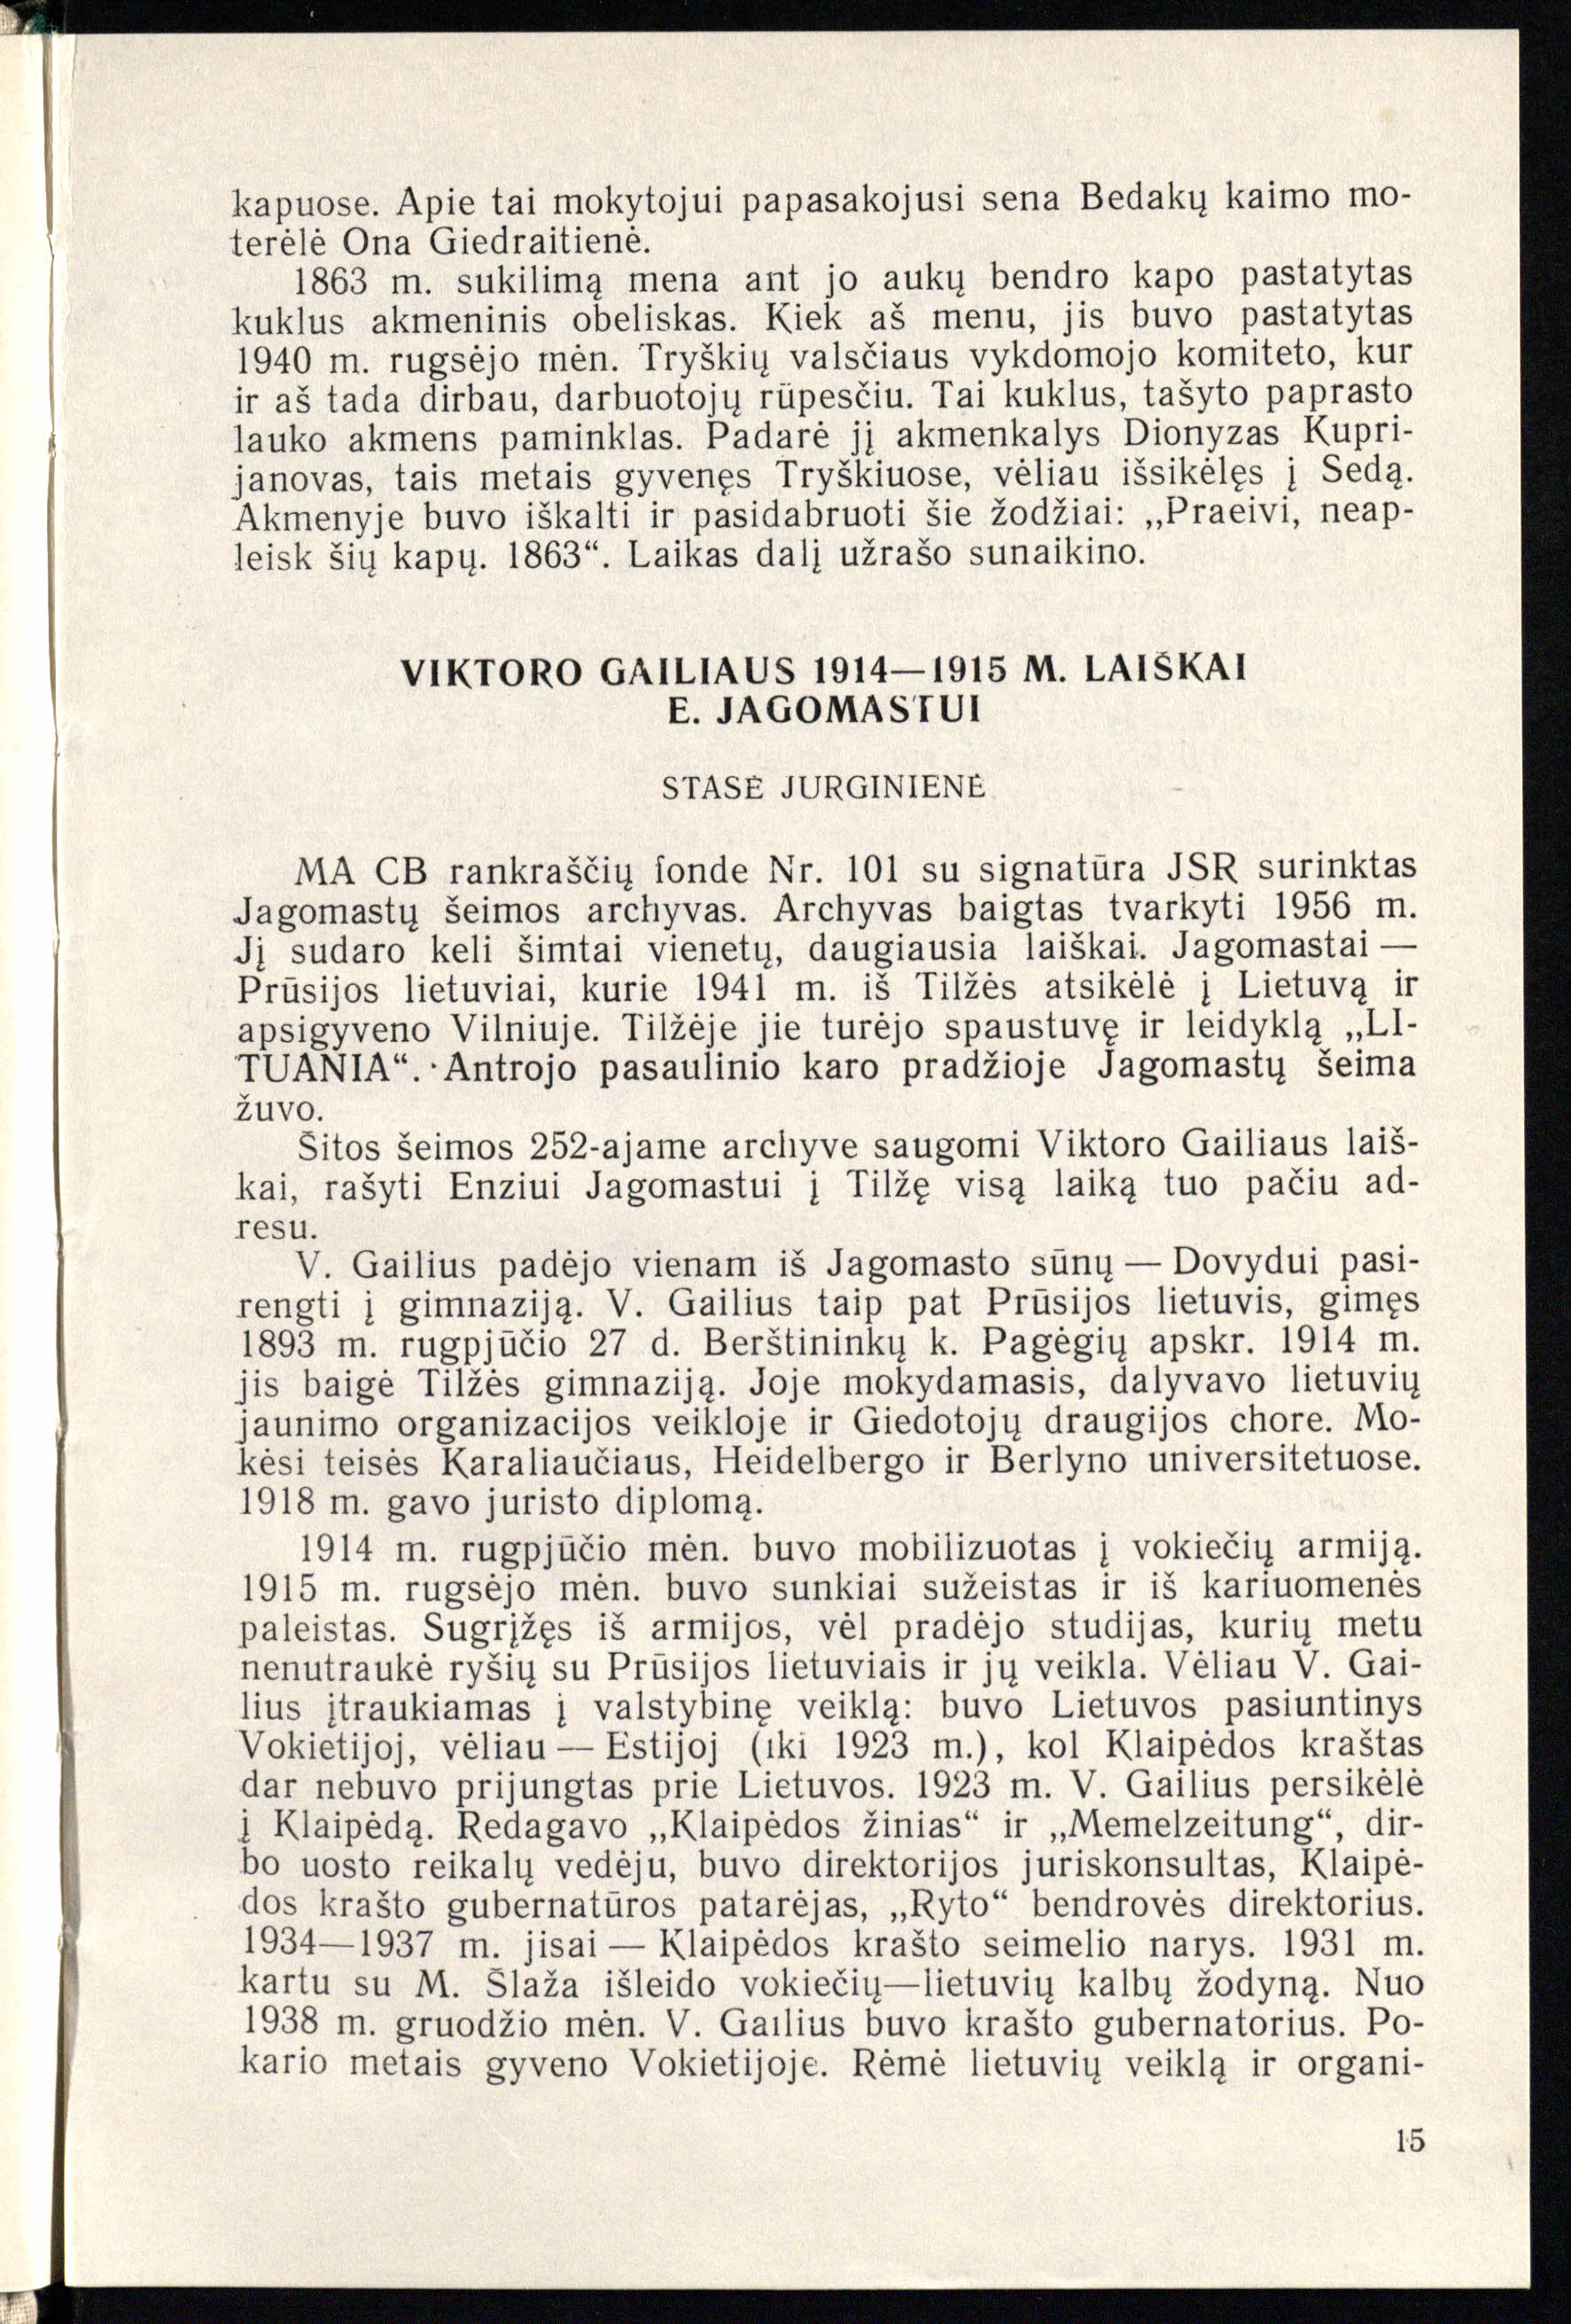 Stasės Jurginienės publikacijoje „Viktoro Gailiaus 1914–1915 m. laiškai E. Jagomastui“ pateikiami 35 laiškų, rašytų iš karo lauko ir gydantis ligoninėje po sužeidimo, tekstai